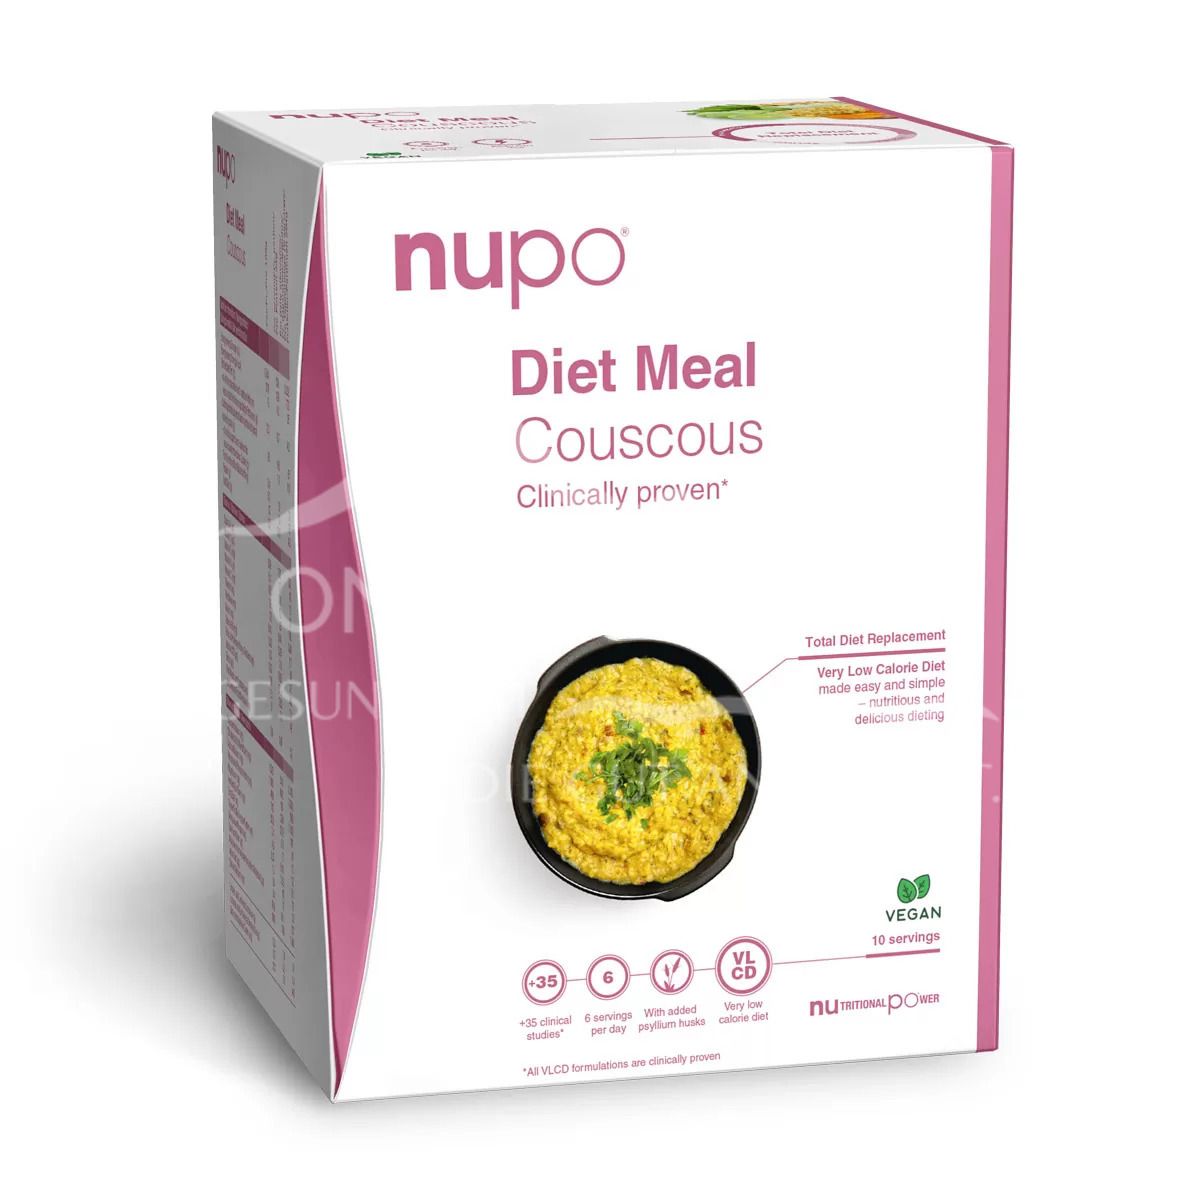 Nupo Diet Meal Vegan Couscous